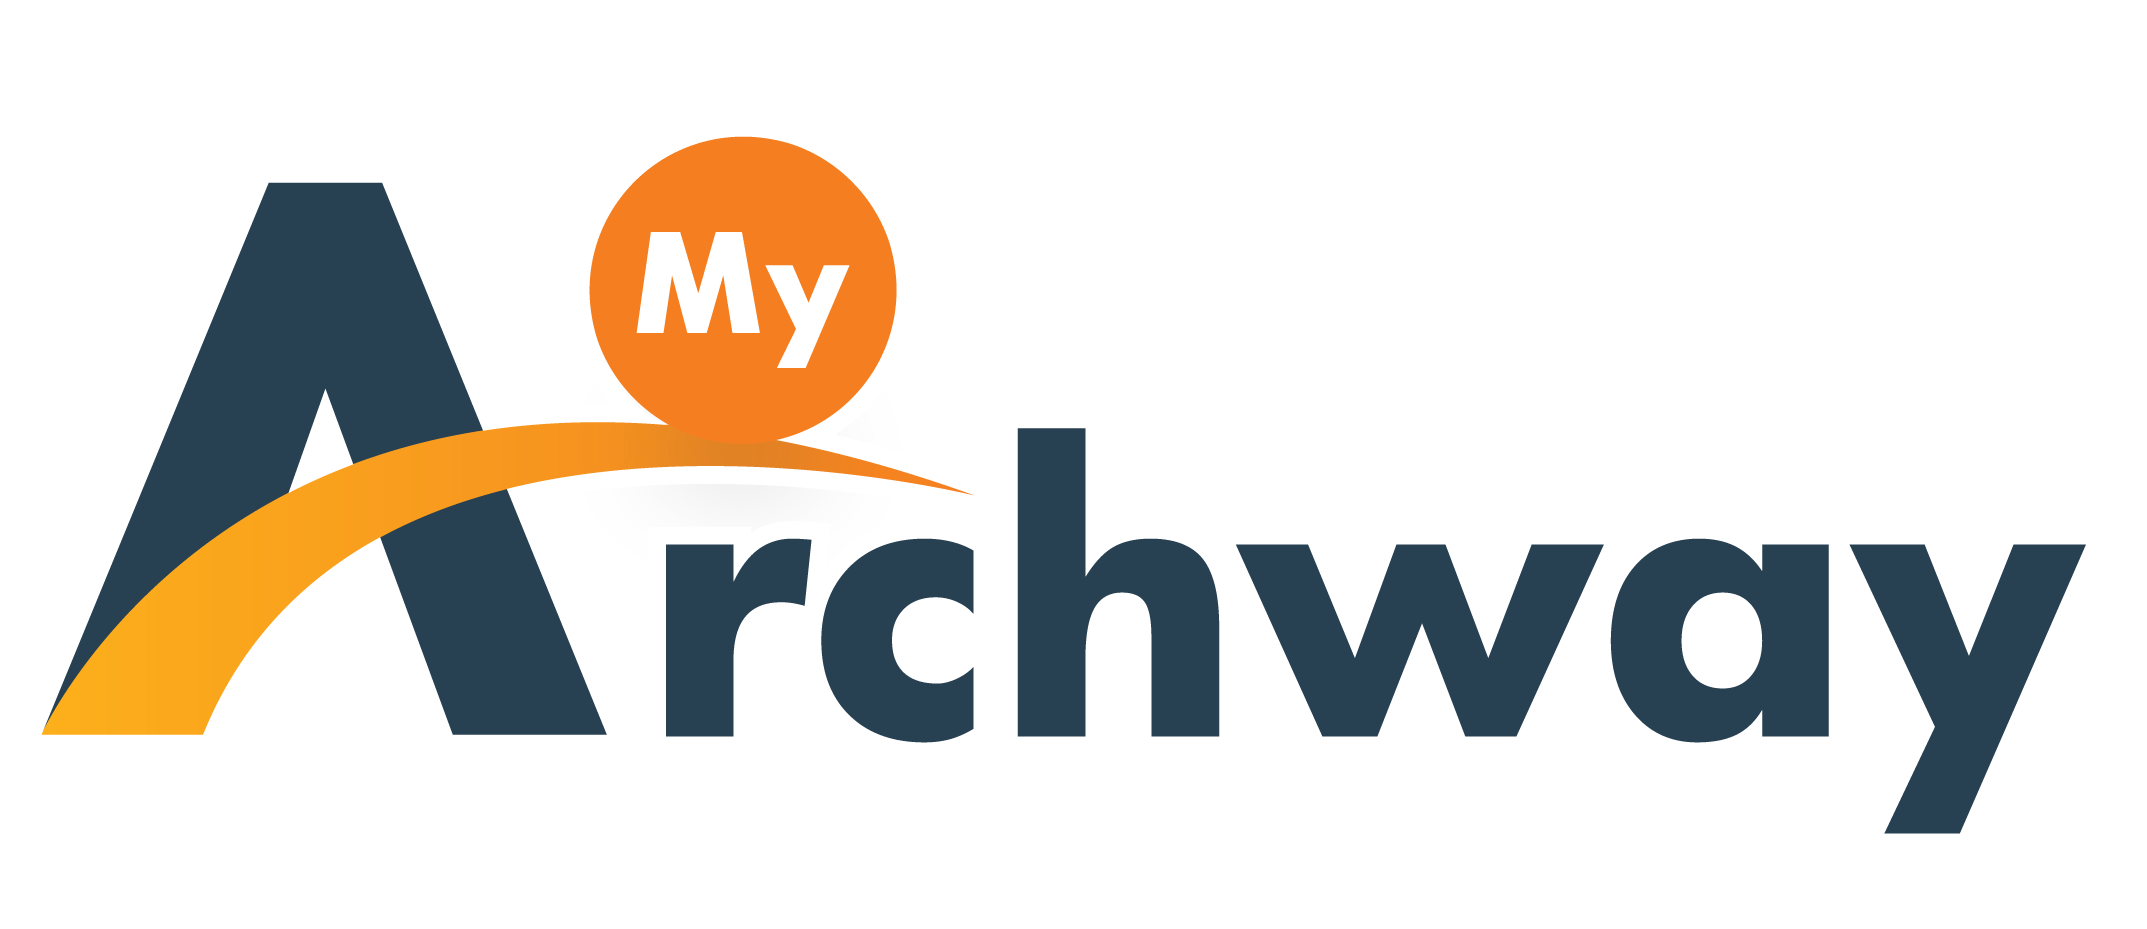 Archway Logo